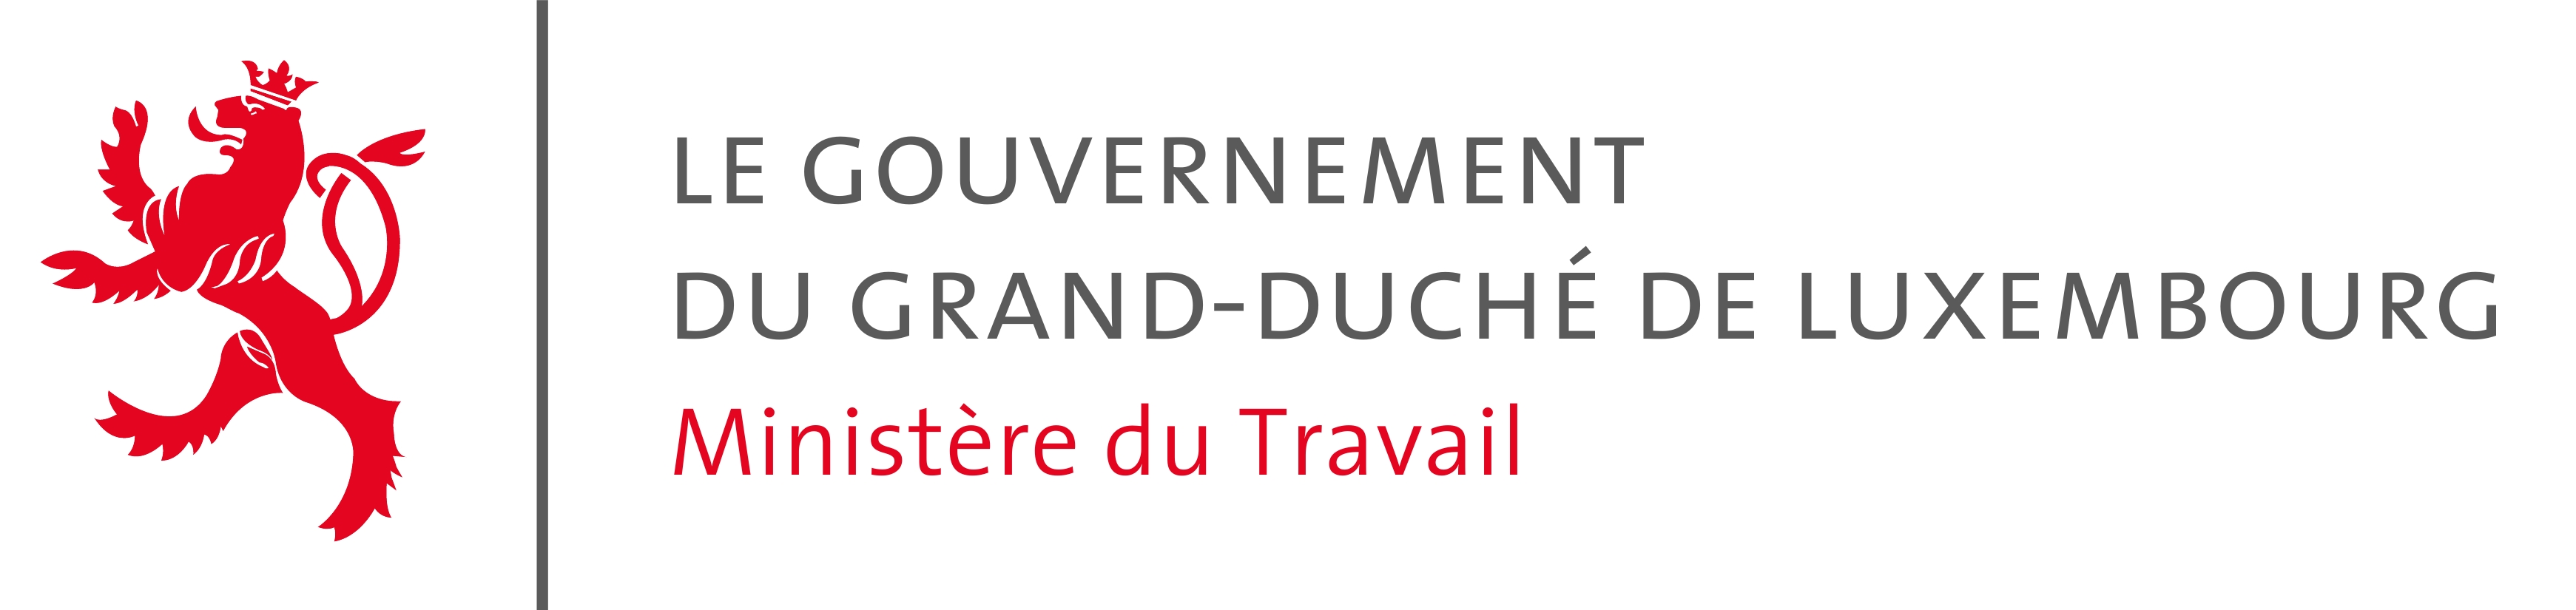 Le Gouvernement du Grand-Duché de Luxembourg - Ministère du Travail 